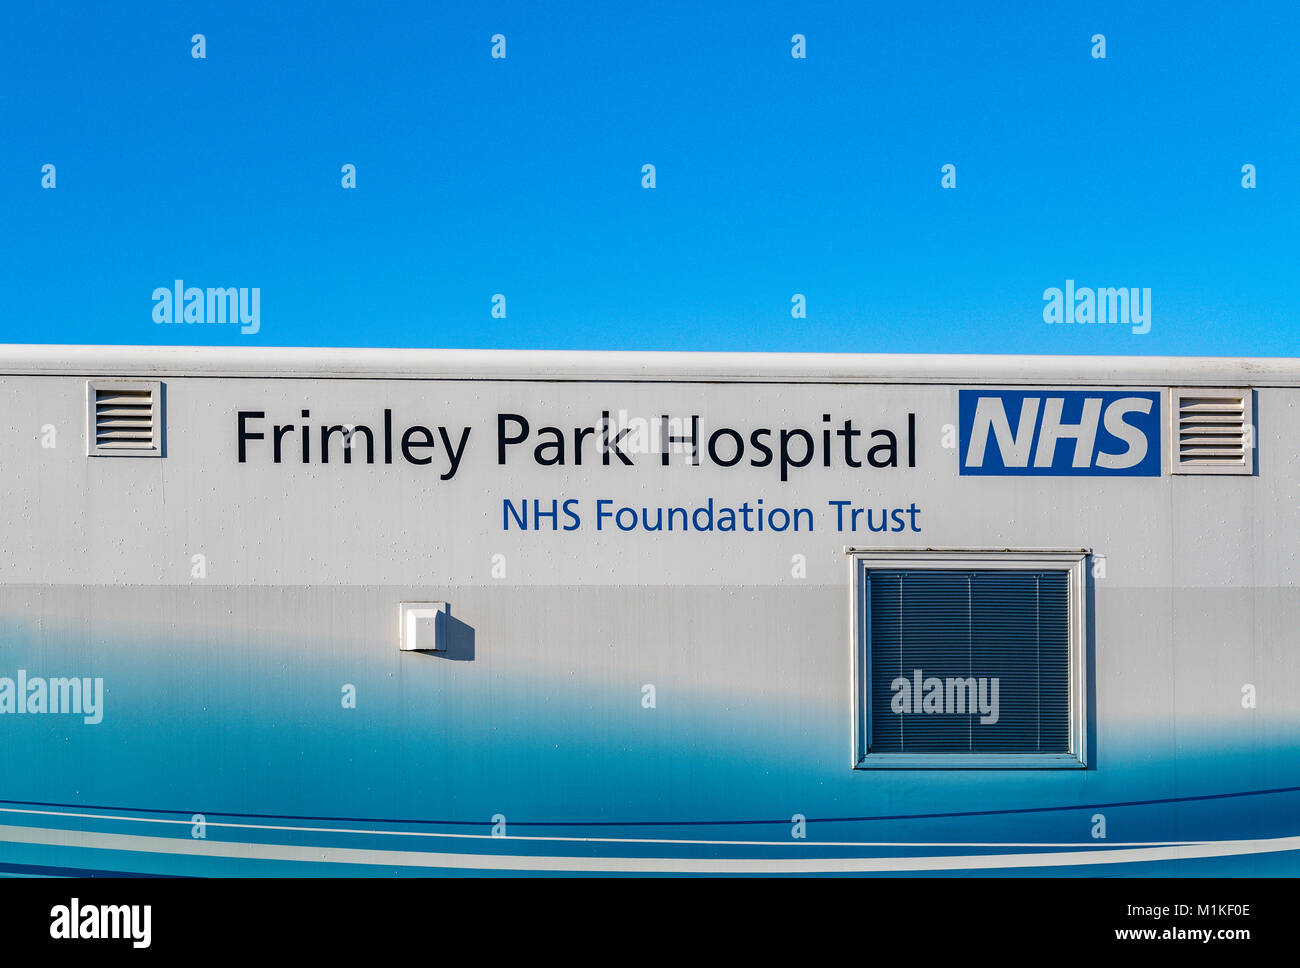 Frimley Park Hospital NHS Foundation Trust Mobile unità maculare parcheggiata in un supermercato car park offre una sosta di trattamento per la condizione dell'occhio AMD Foto Stock